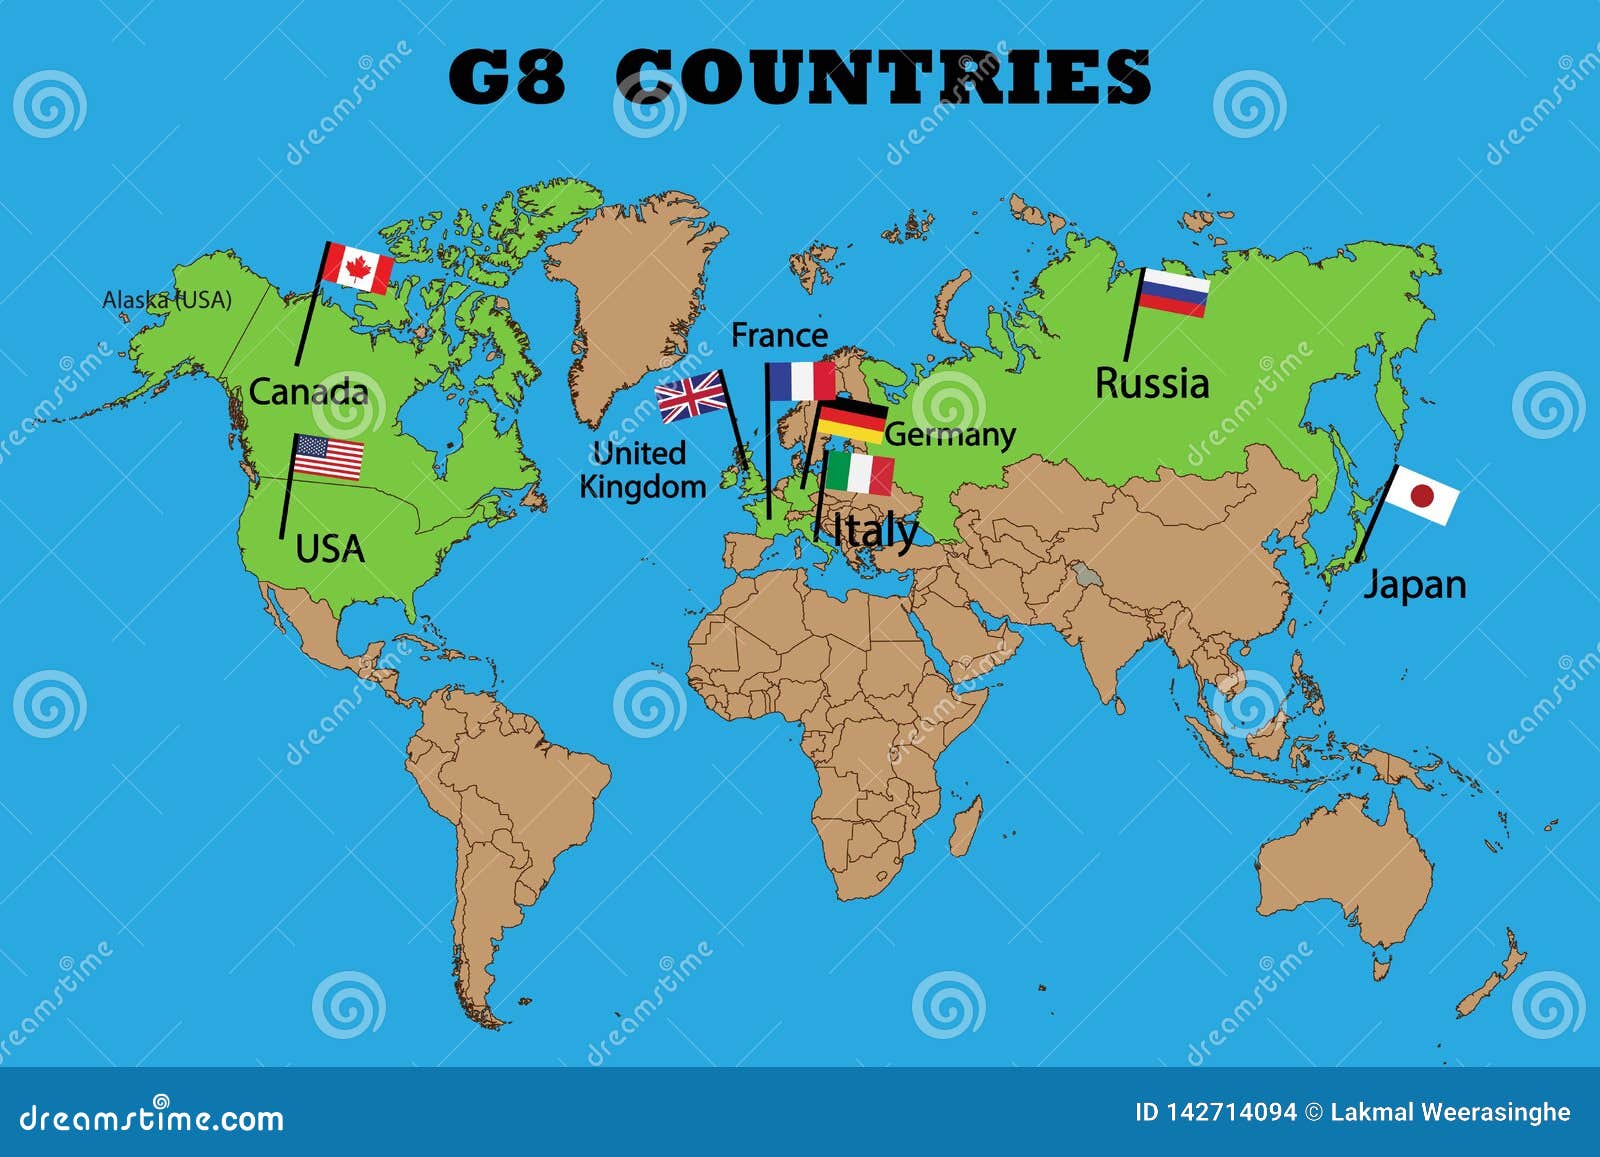 Страны входящие большую восьмерку. Страны большой восьмерки. Государства большой восьмёрки. Страны большой семерки. Большая восьмёрка стран на карте.